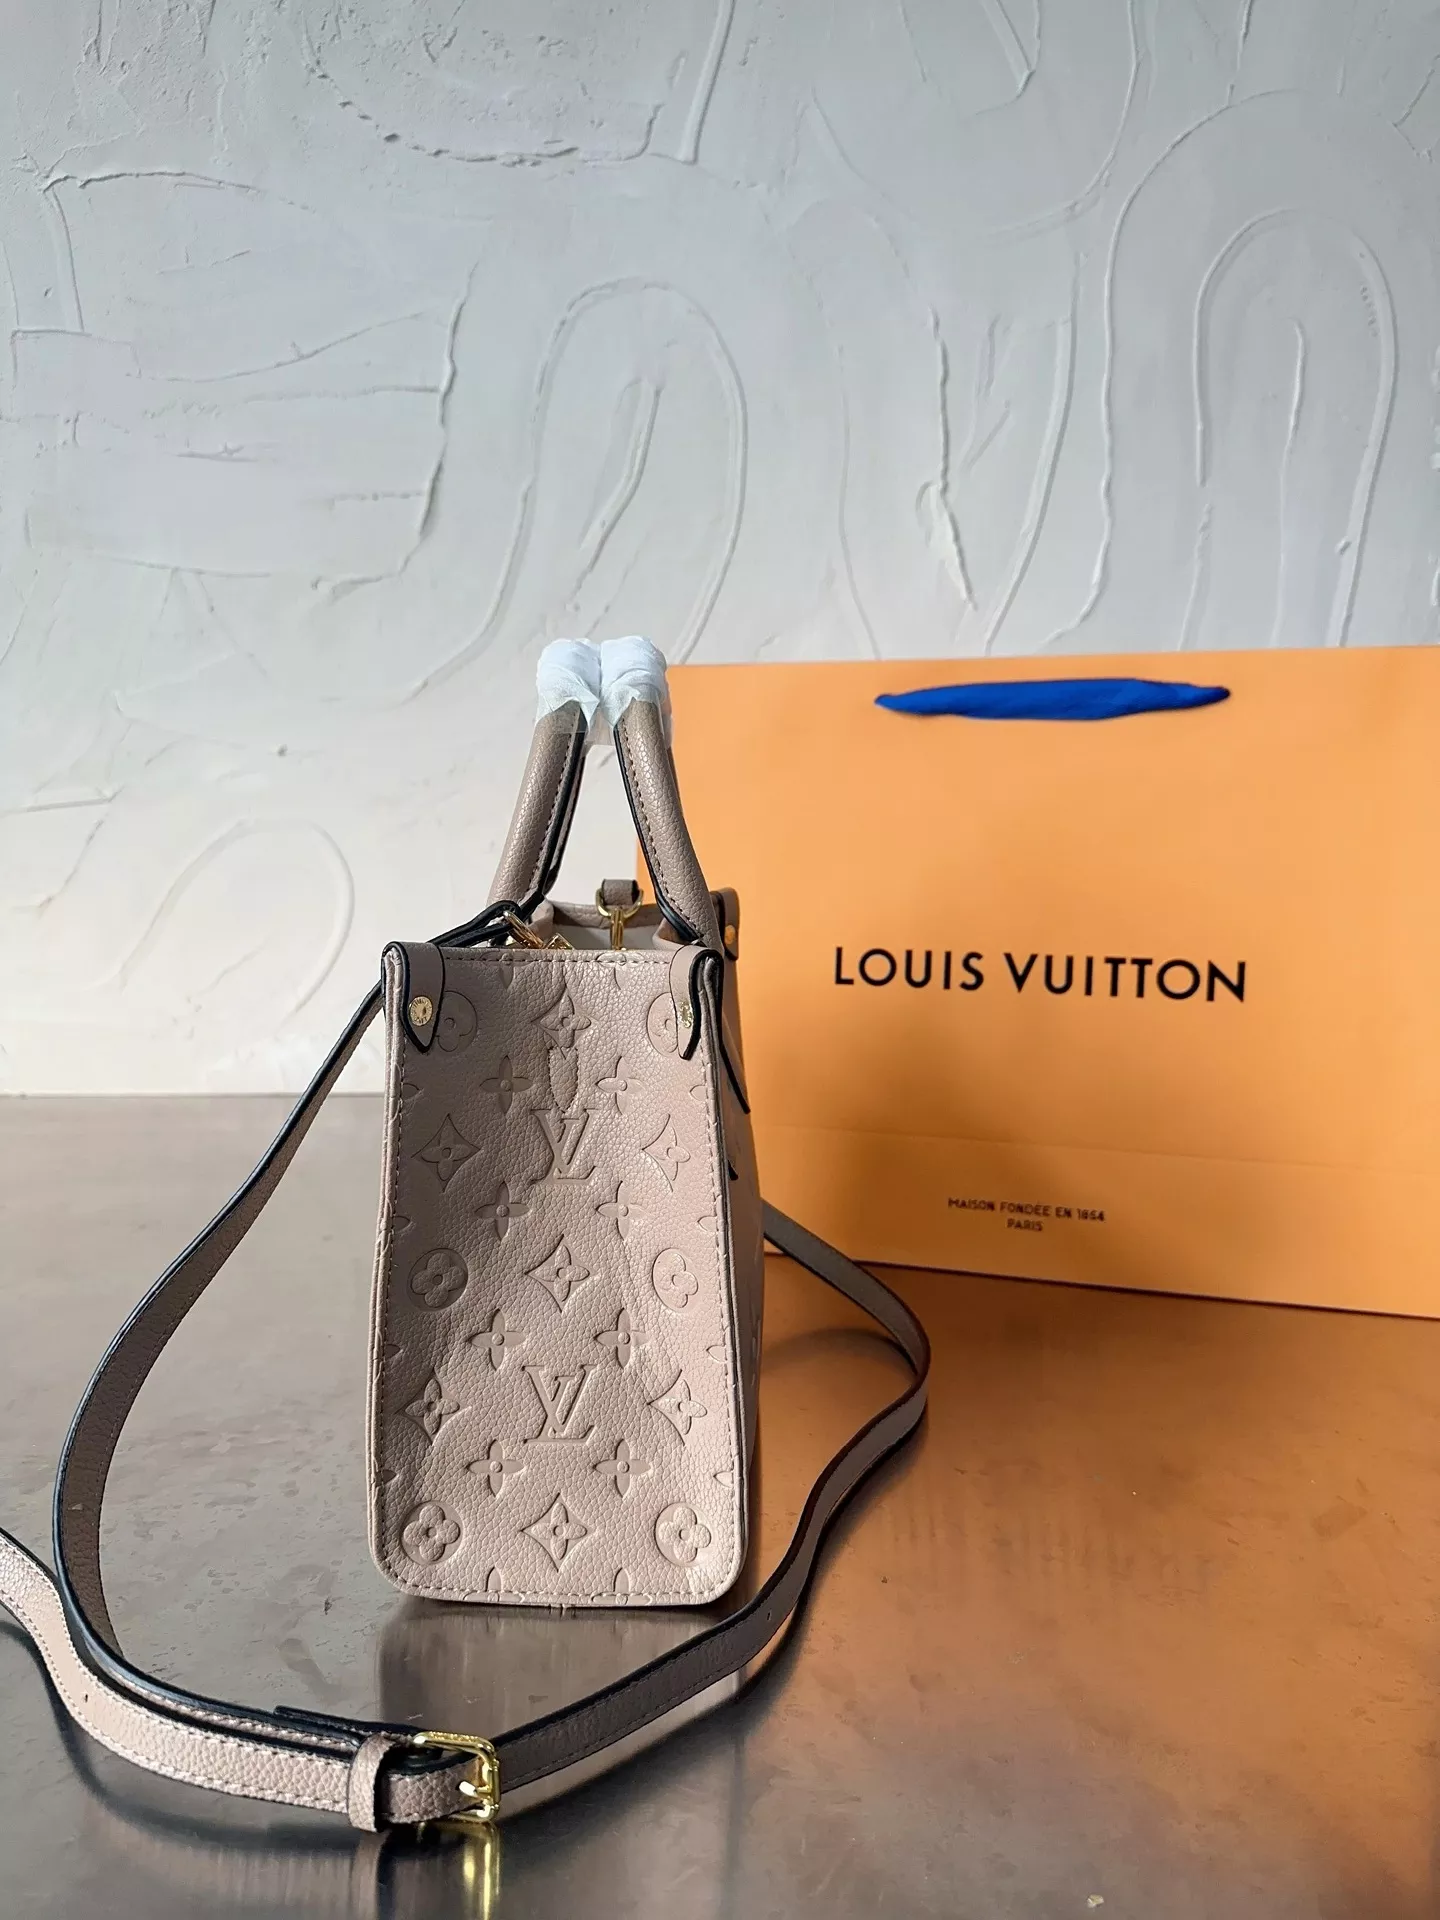 Love Louis Vuitton Love Paris Love Mom Love You @louisvuitton